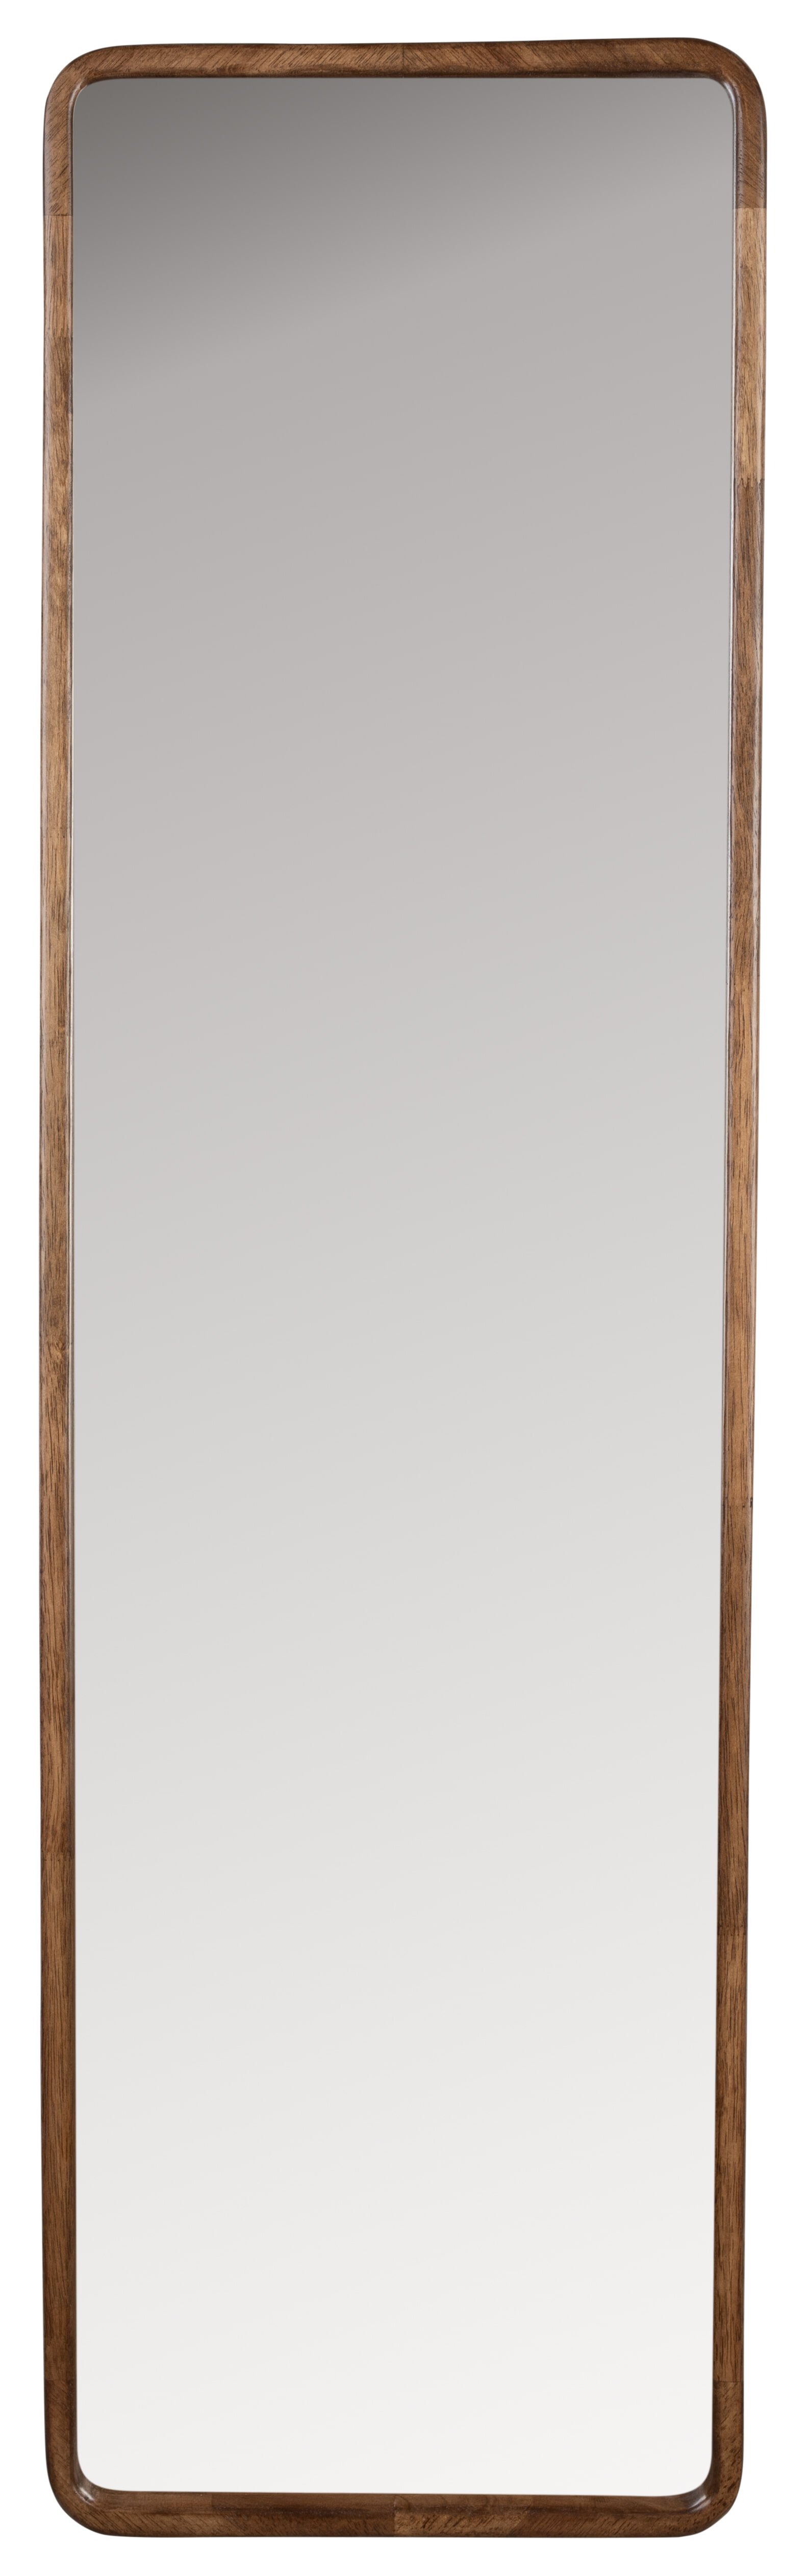 ZILT Rechthoekige Spiegel Rania Rubberhout, 120 x 34cm - Bruin